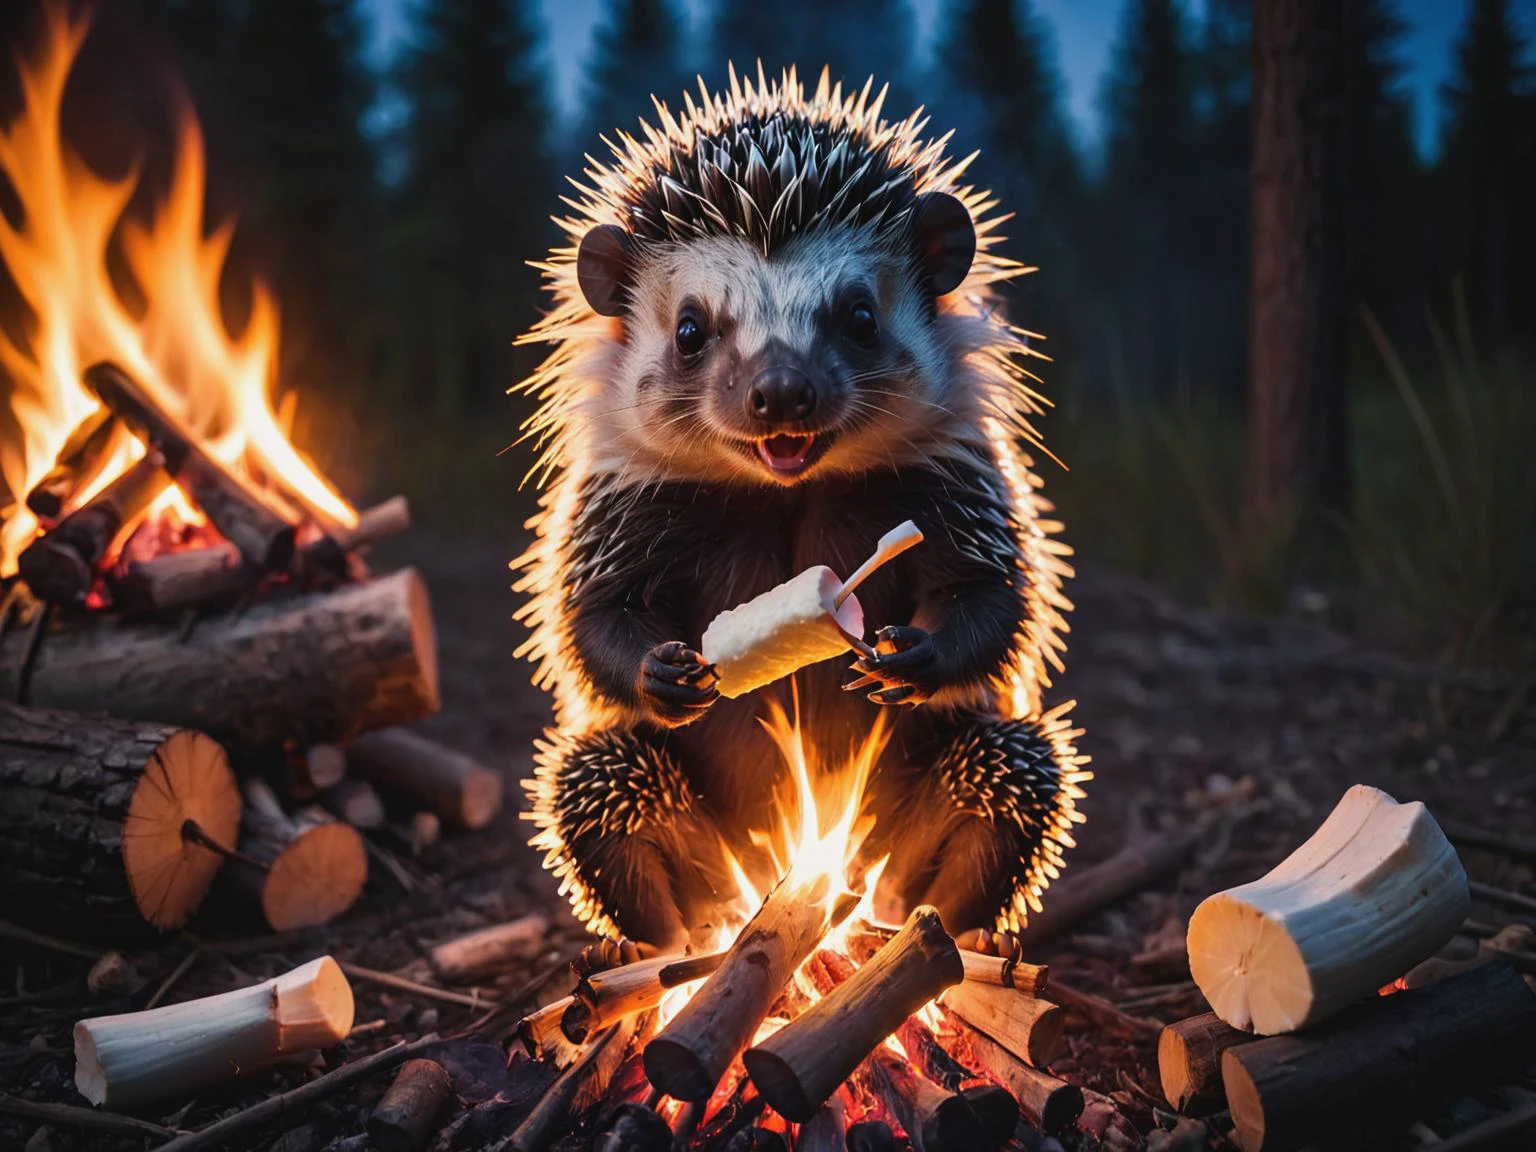 letitbrn, porco-espinho sentado ao redor da fogueira assando marshmallows no fogo, 